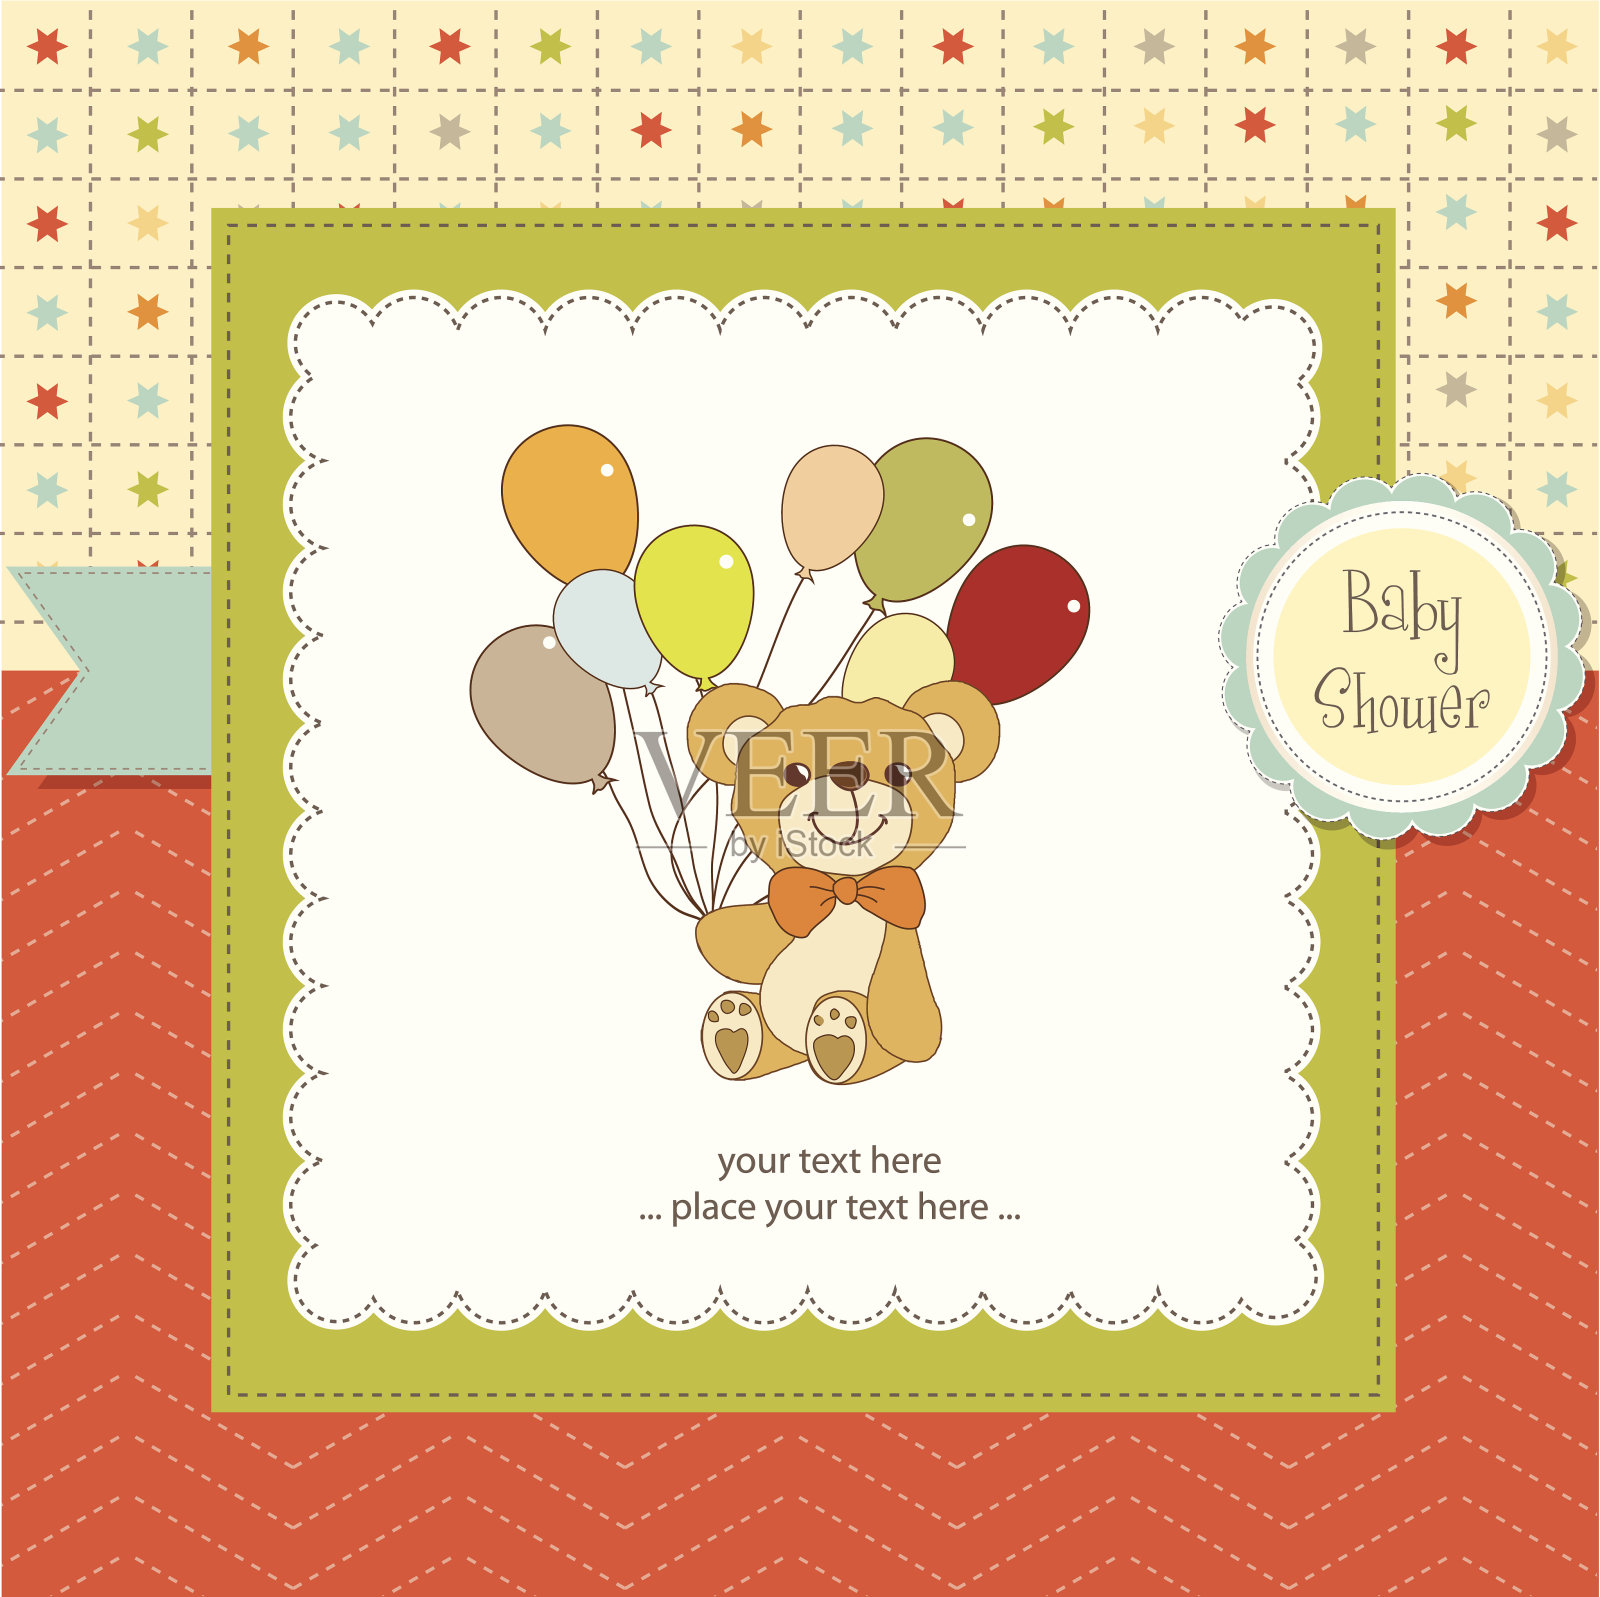 婴儿送礼卡和可爱的泰迪熊设计模板素材